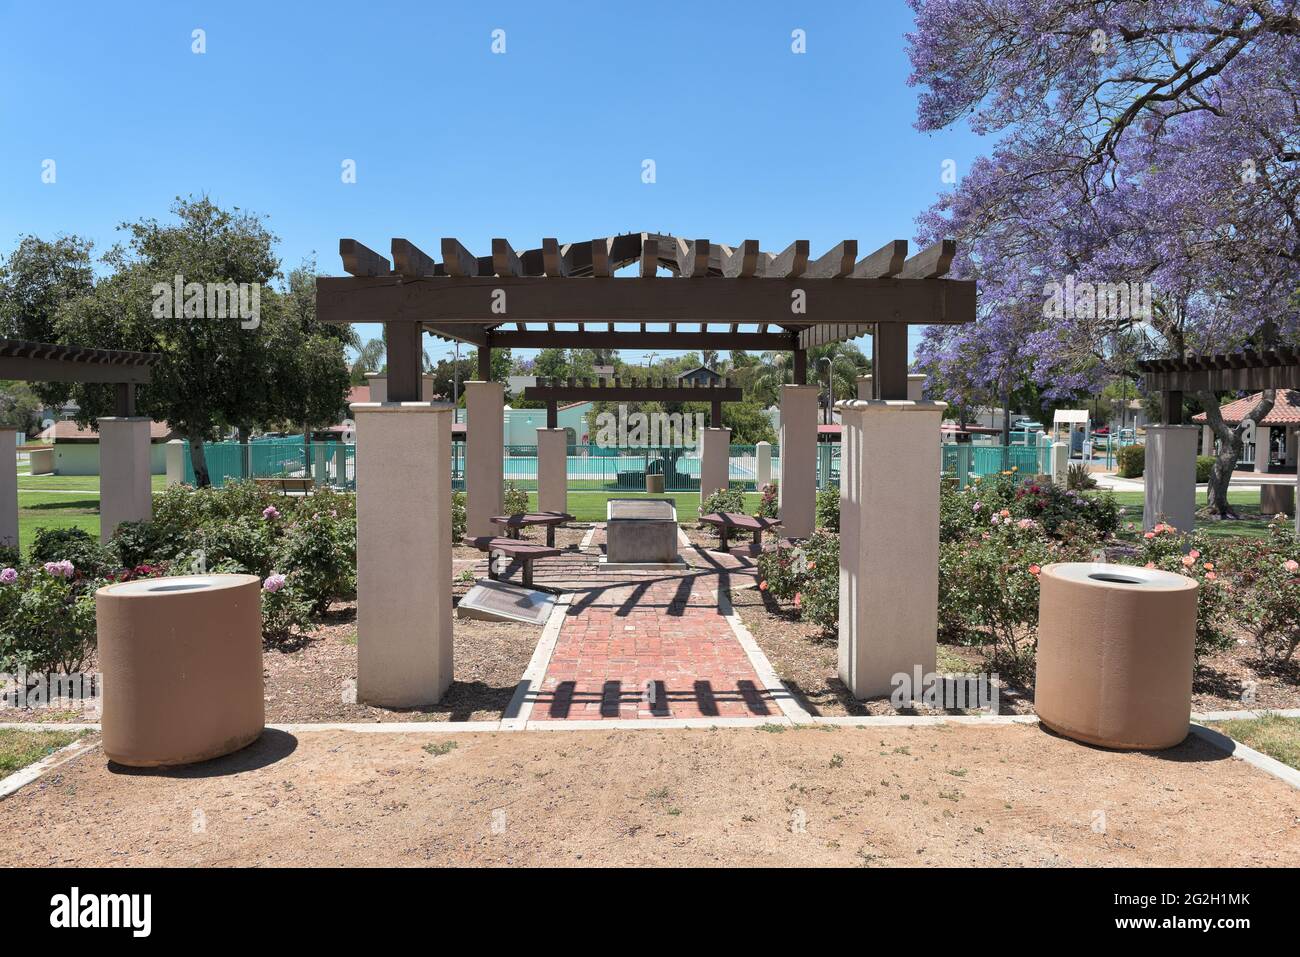 BREA, KALIFORNIEN - 9 JUN 2021: Der Rosengarten mit dem Sprung in den Hintergrund im City Hall Park. Stockfoto